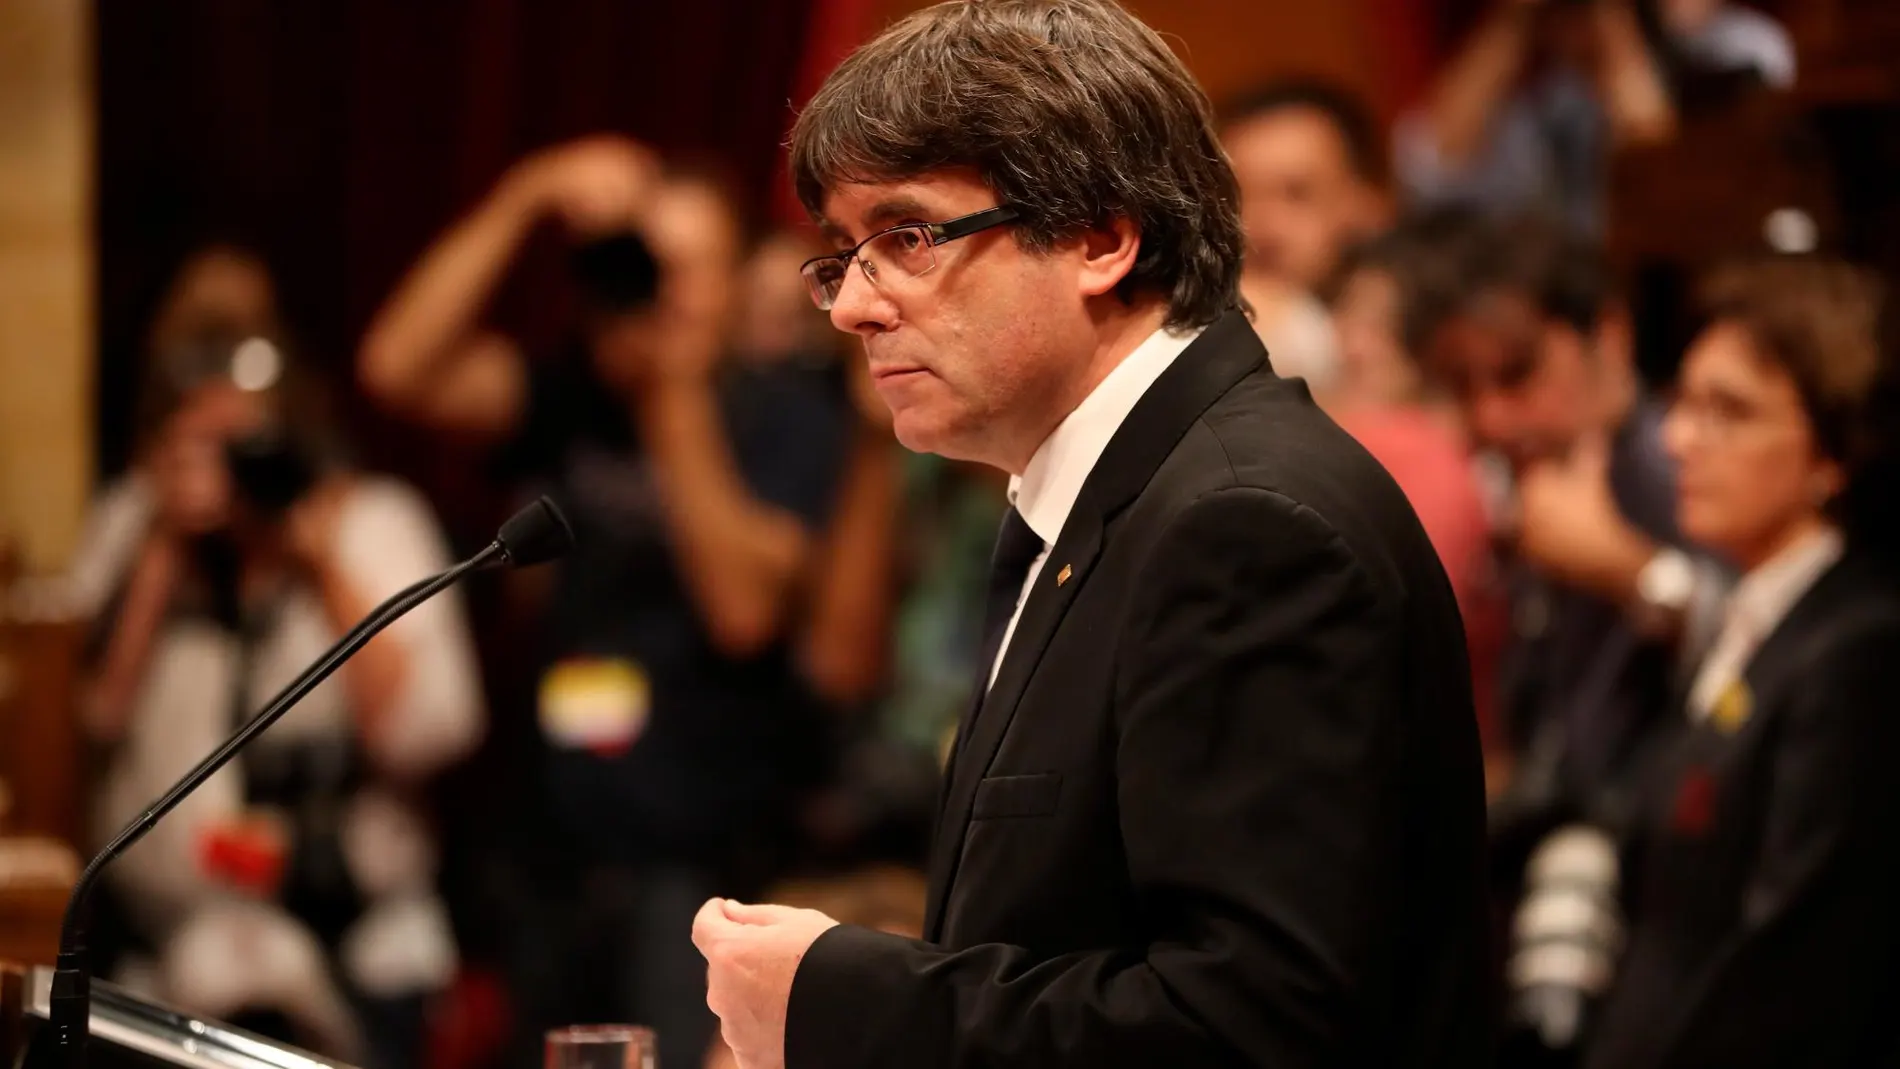 Comparecencia de Carles Puigdemont, el 10 de octubre de 2017, día que anunciaba la declaración unilateral de independencia en el Parlament de Cataluña / ©MIQUEL GONZALEZ